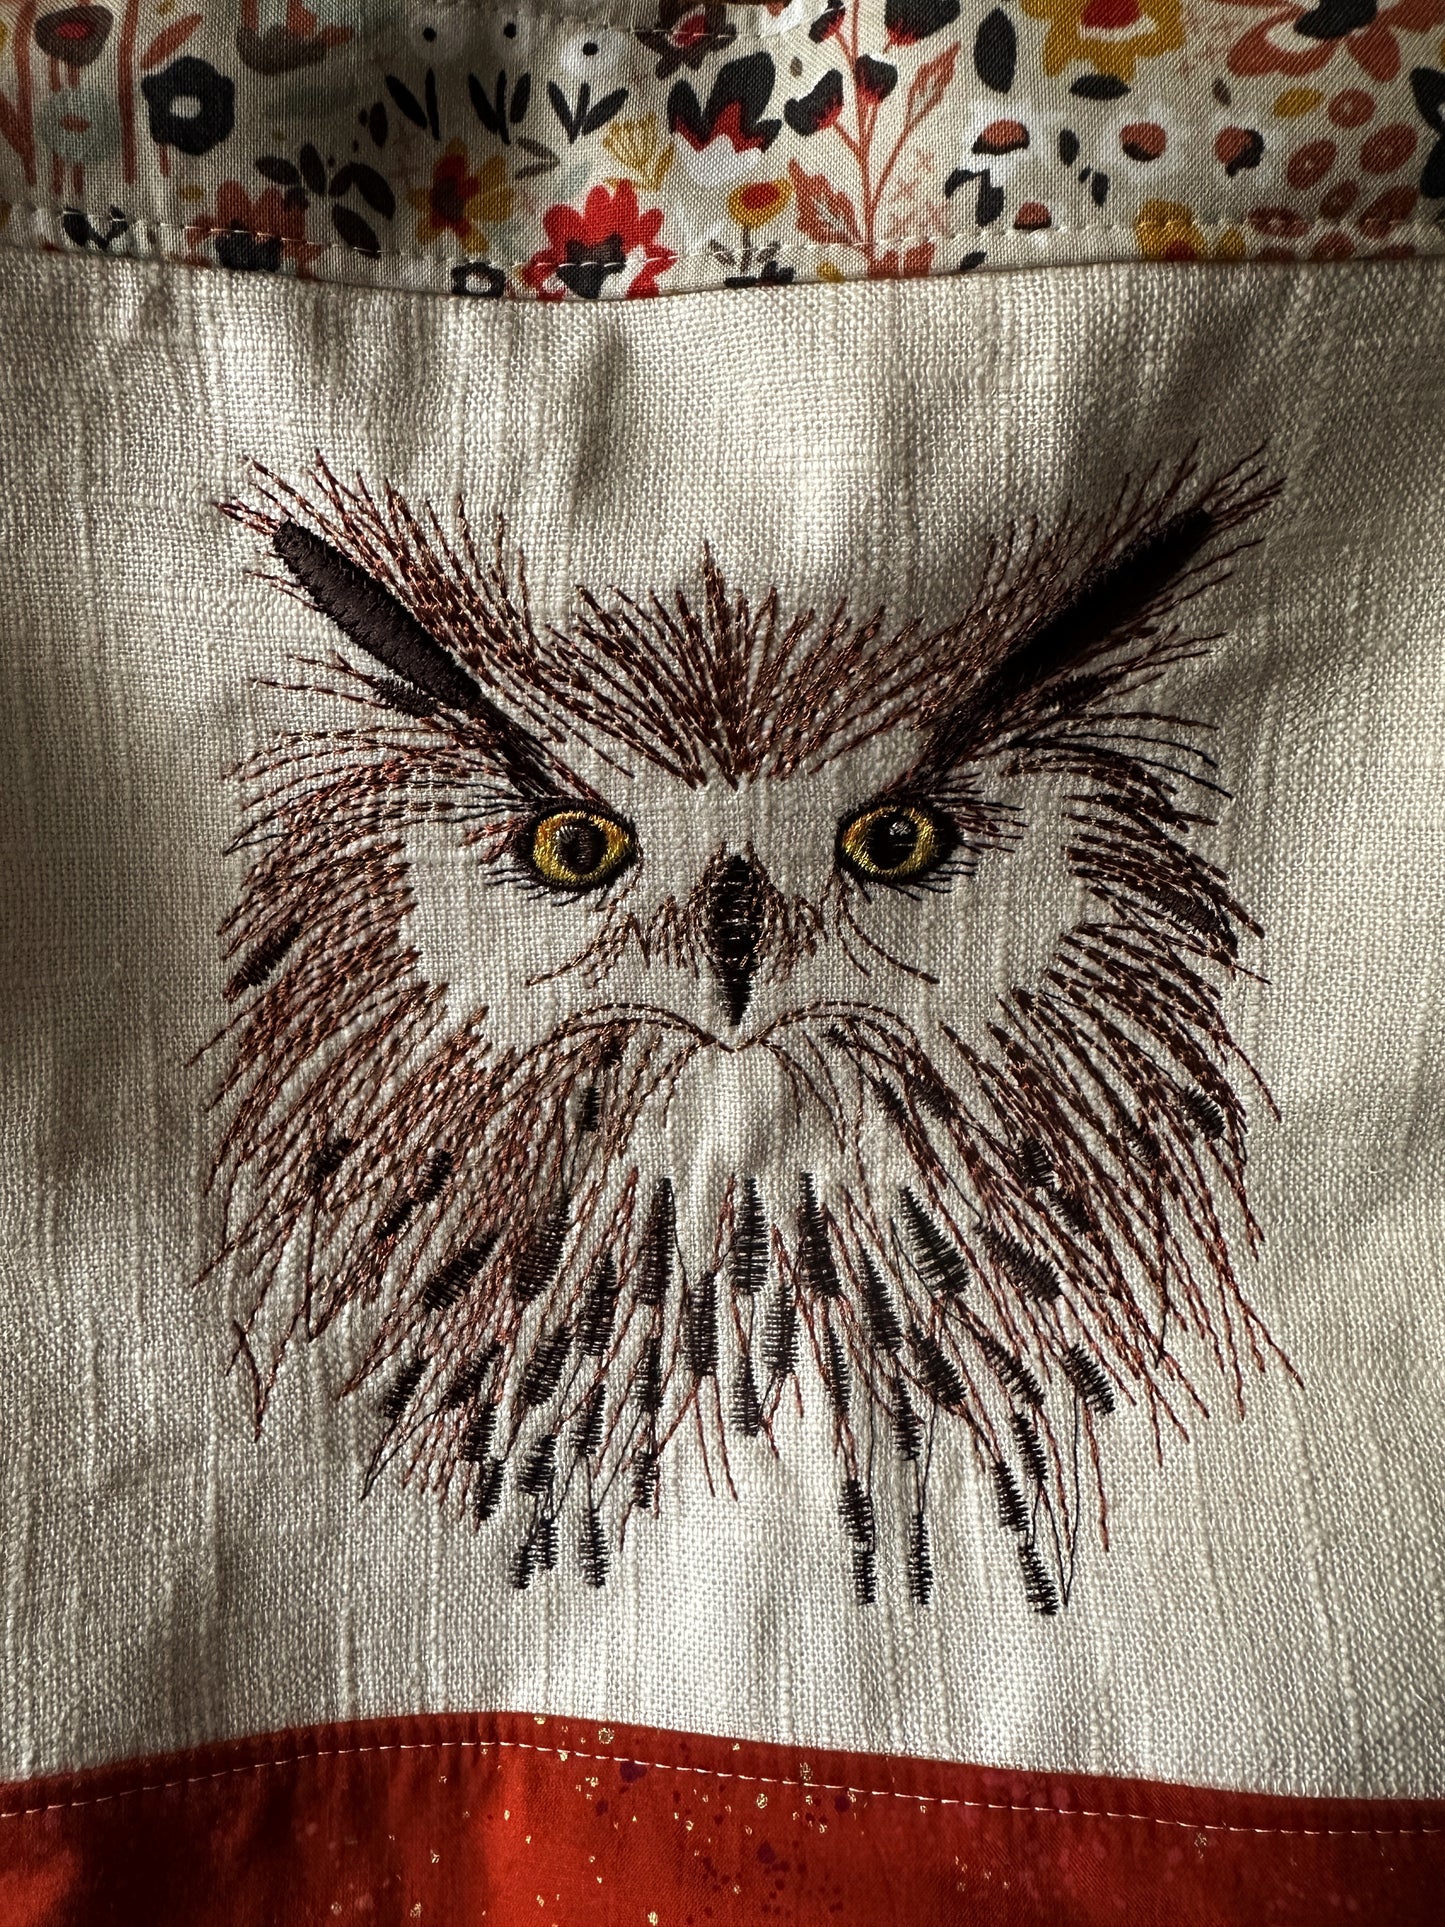 Owl Large Shoulder Bag